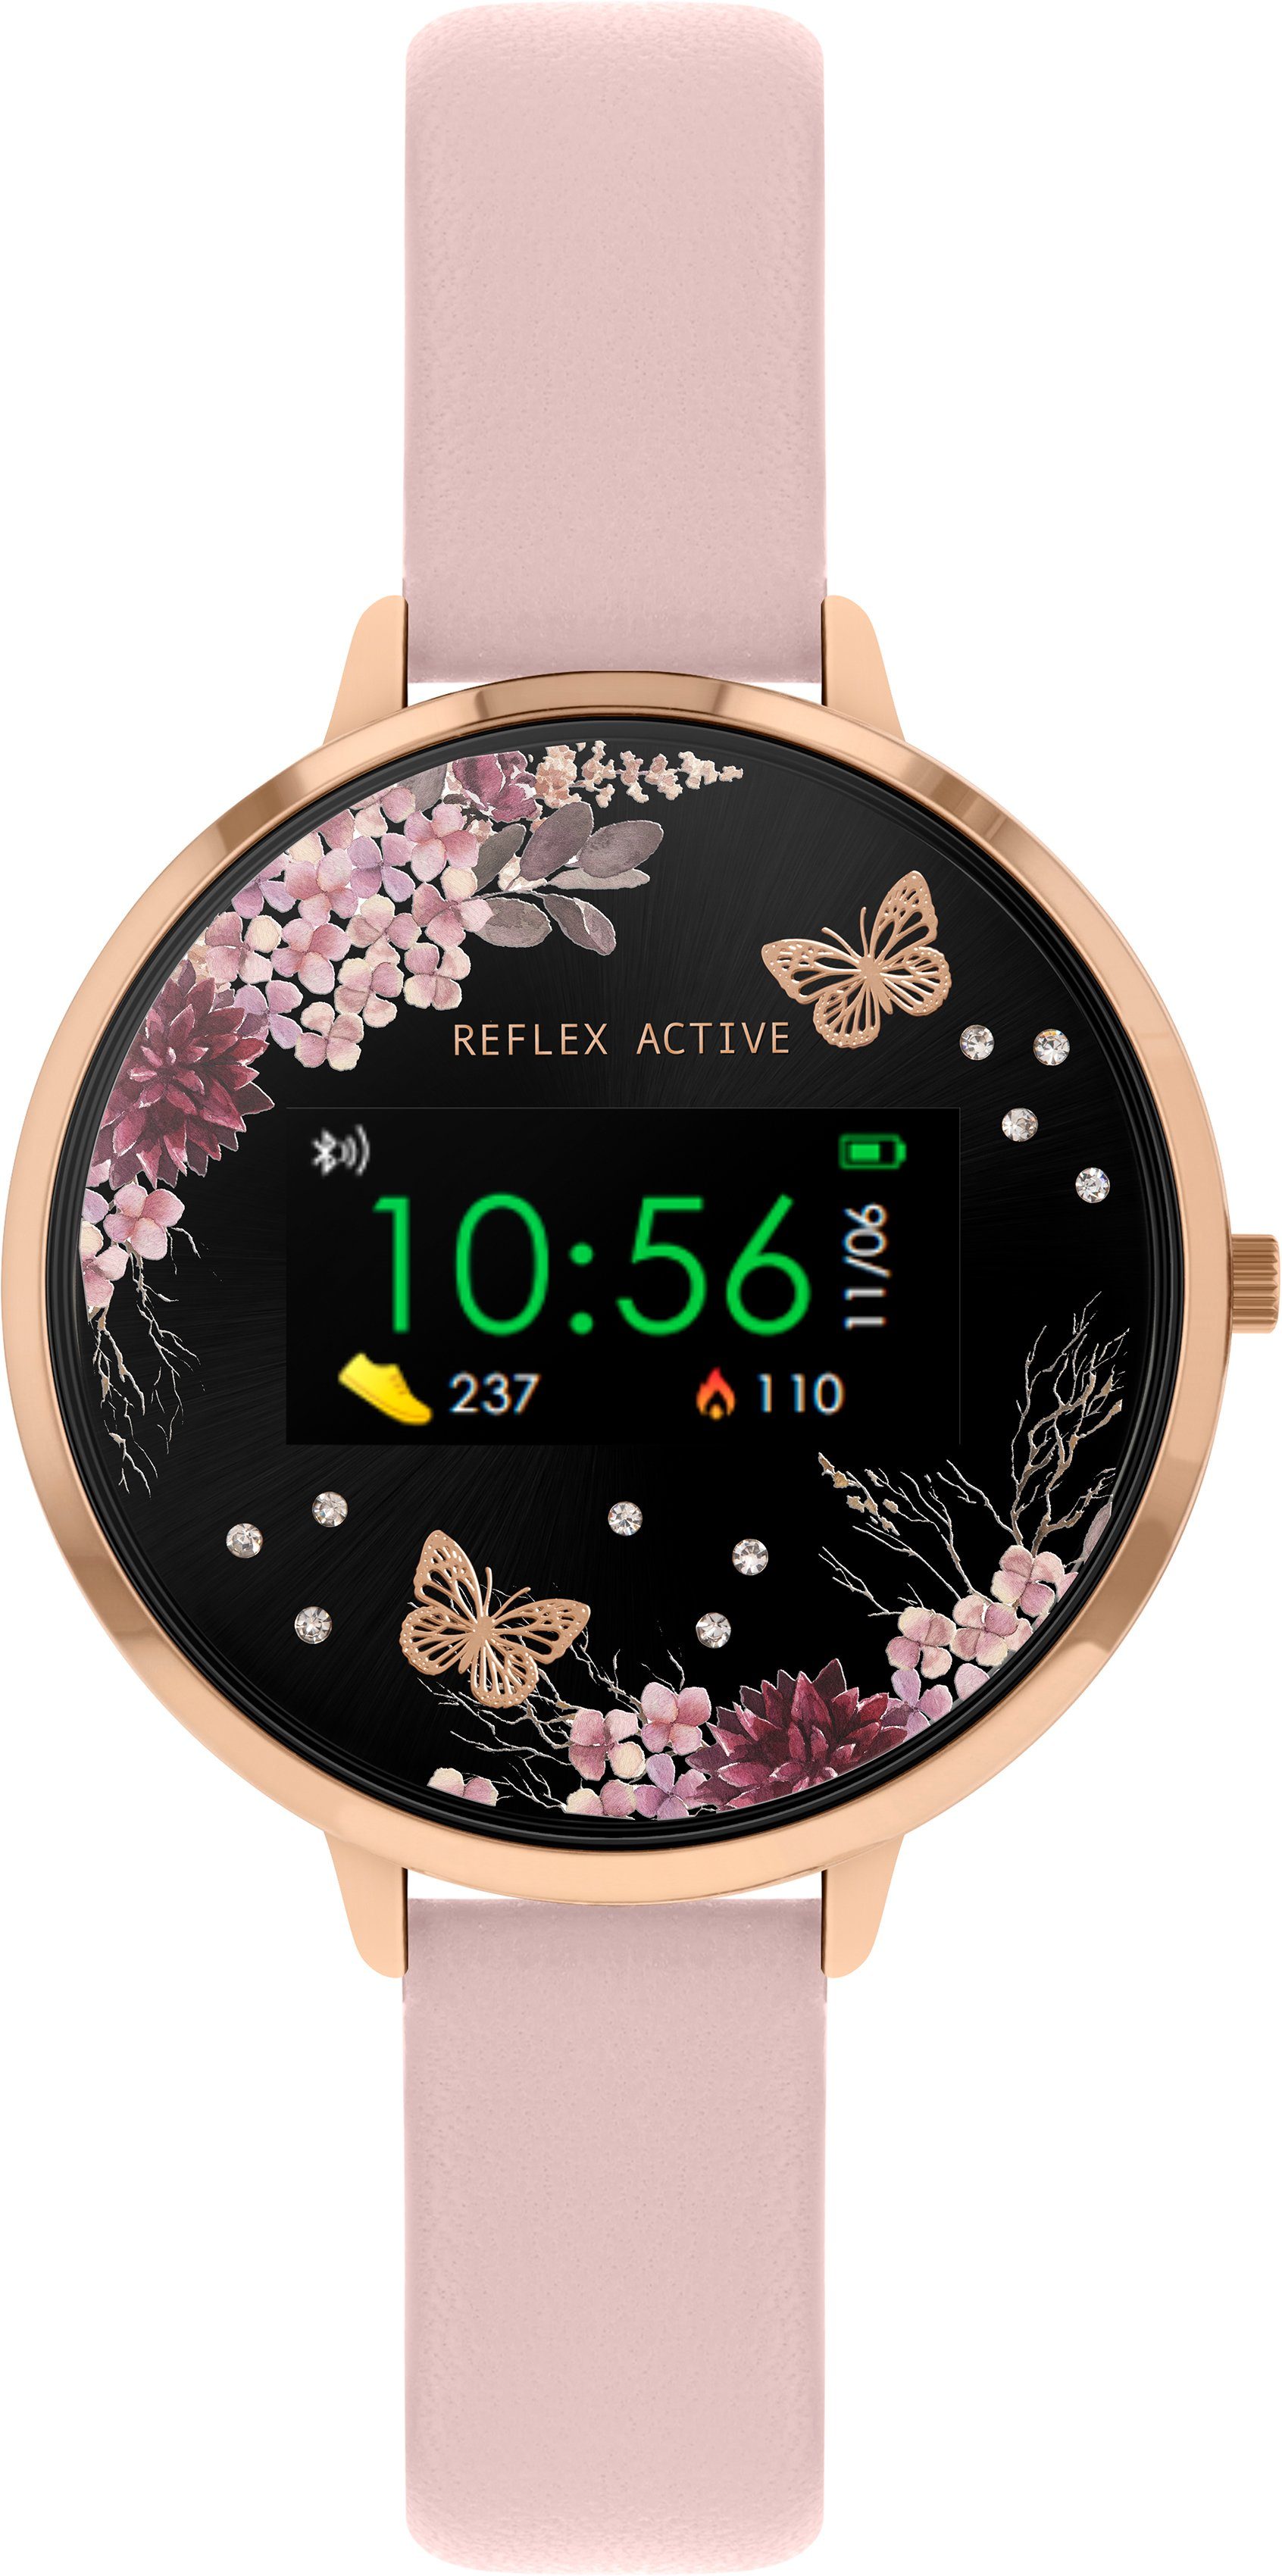 REFLEX ACTIVE Serie 3, RA03-2014 Smartwatch